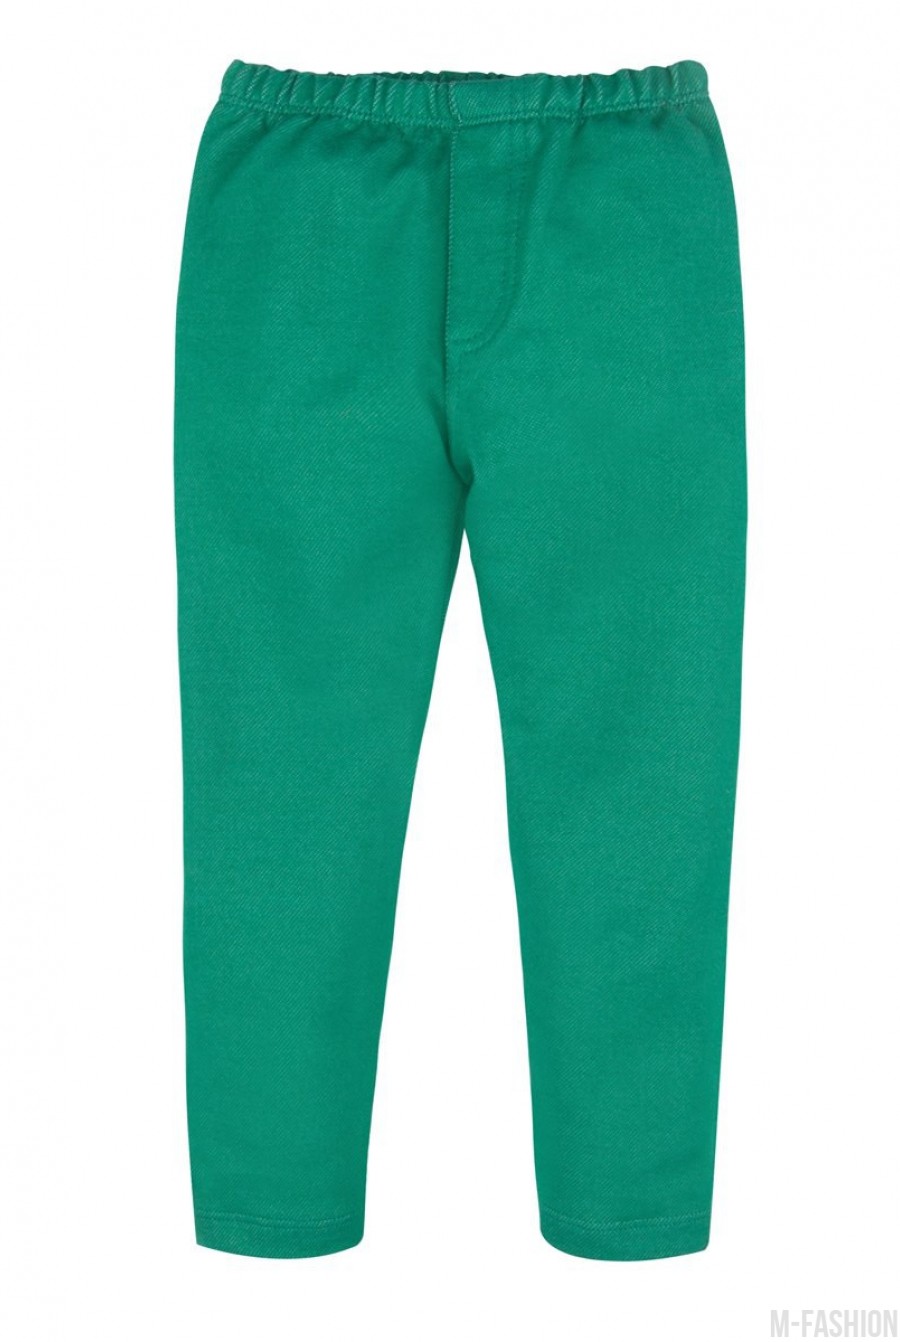 Зеленые джинсовые леггинсы на резинке - Фото 1